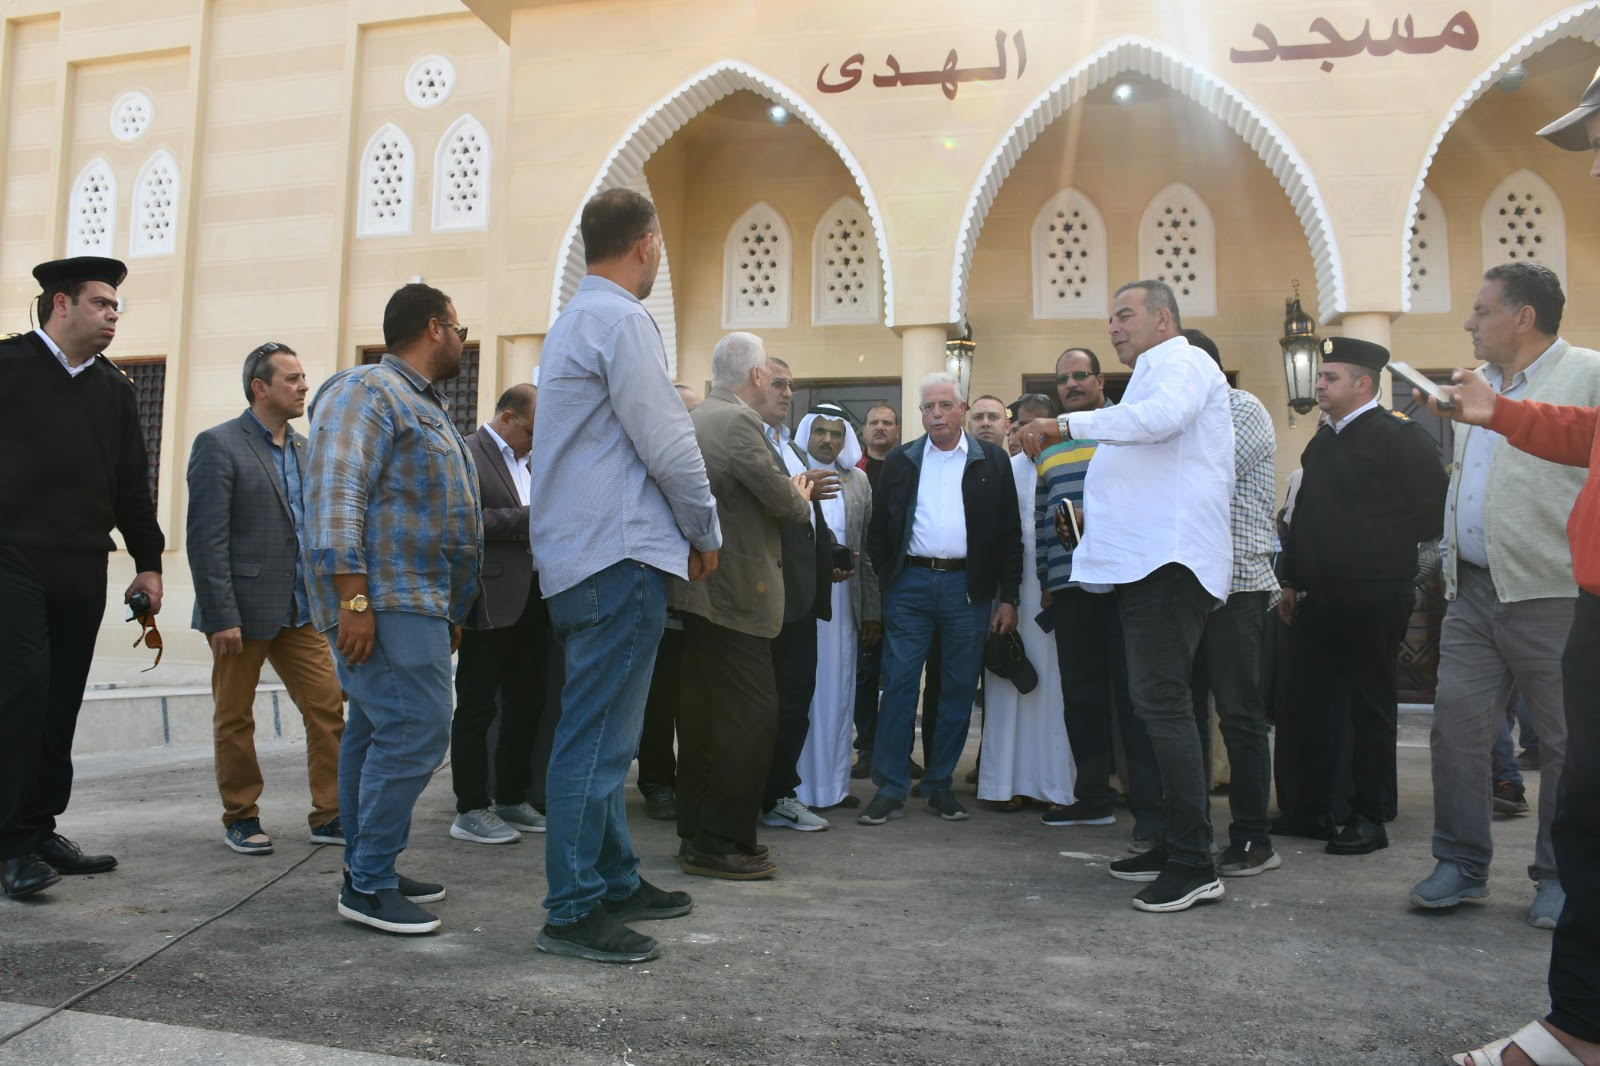  محافظ جنوب سيناء يتفقد مسجد الهدى وطريق مبارك (1)